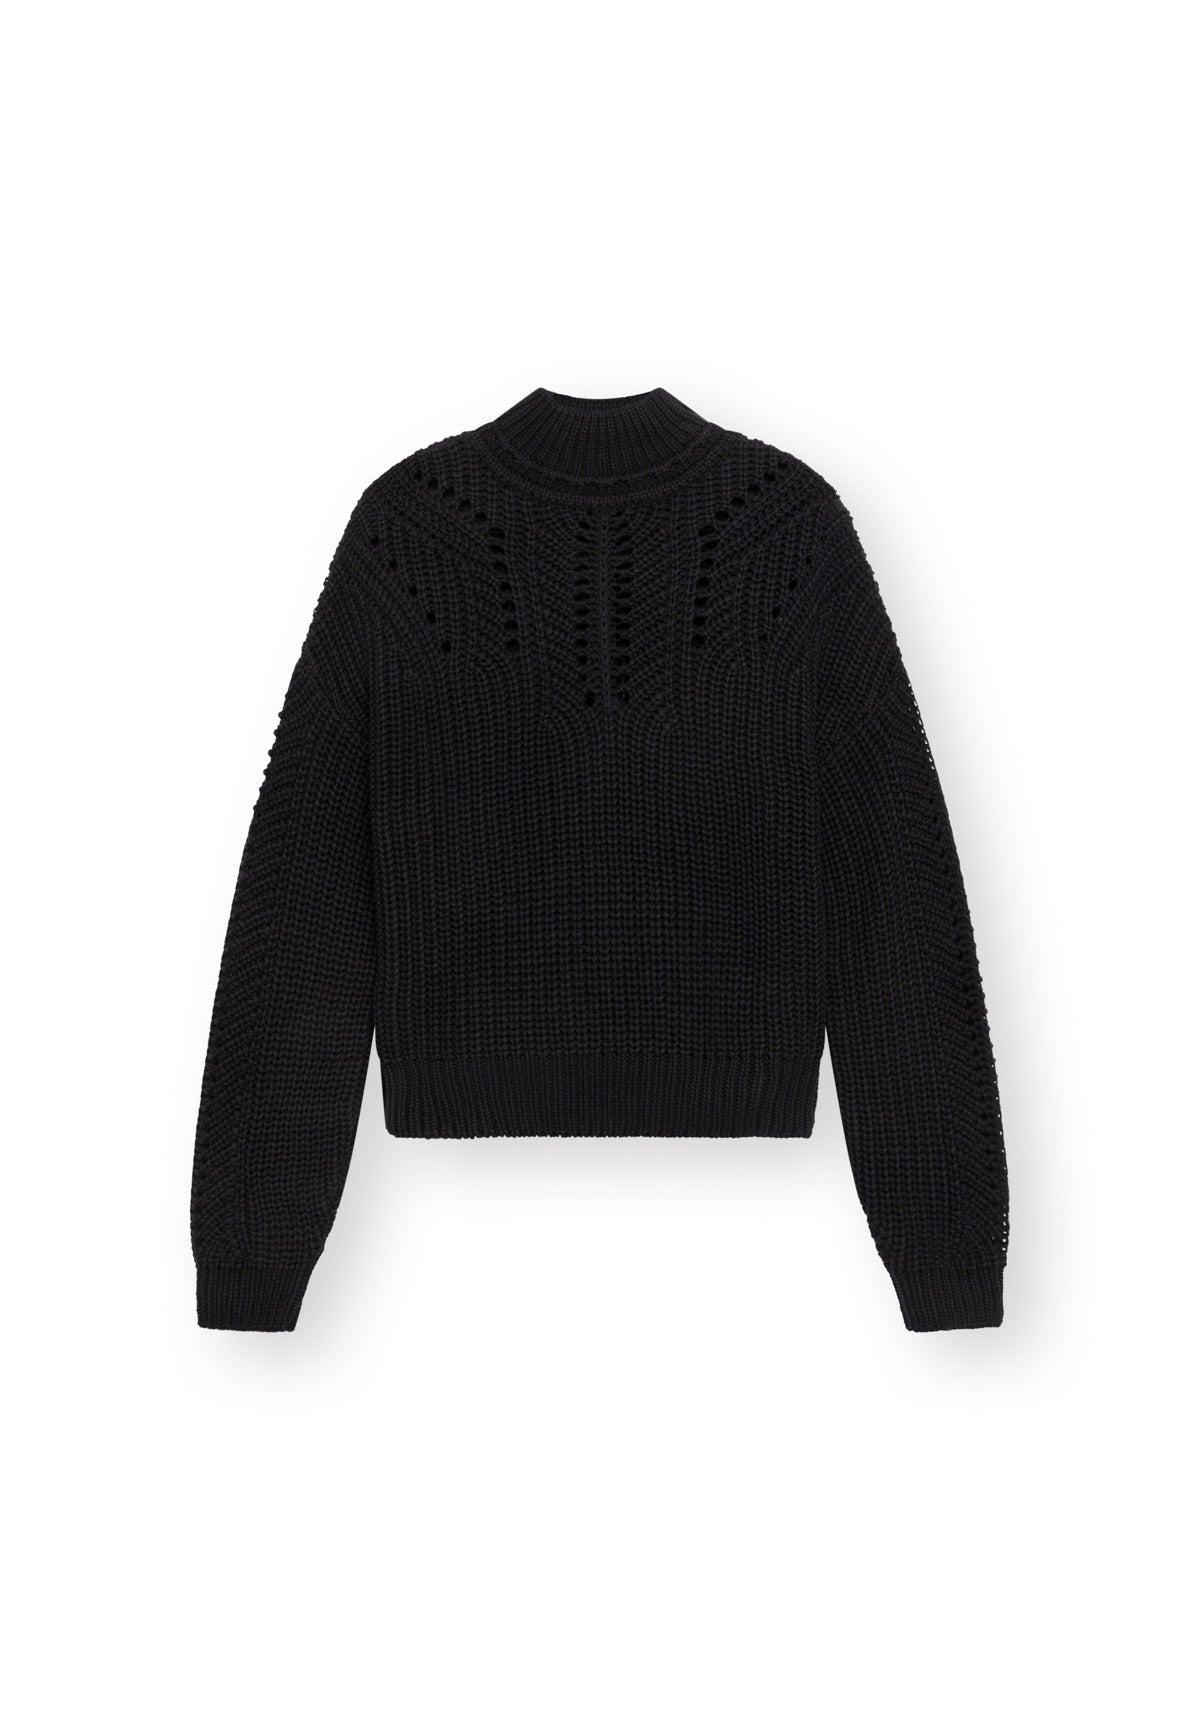 Pullover ALEIKA in schwarz von LOVJOI aus Bio-Baumwolle